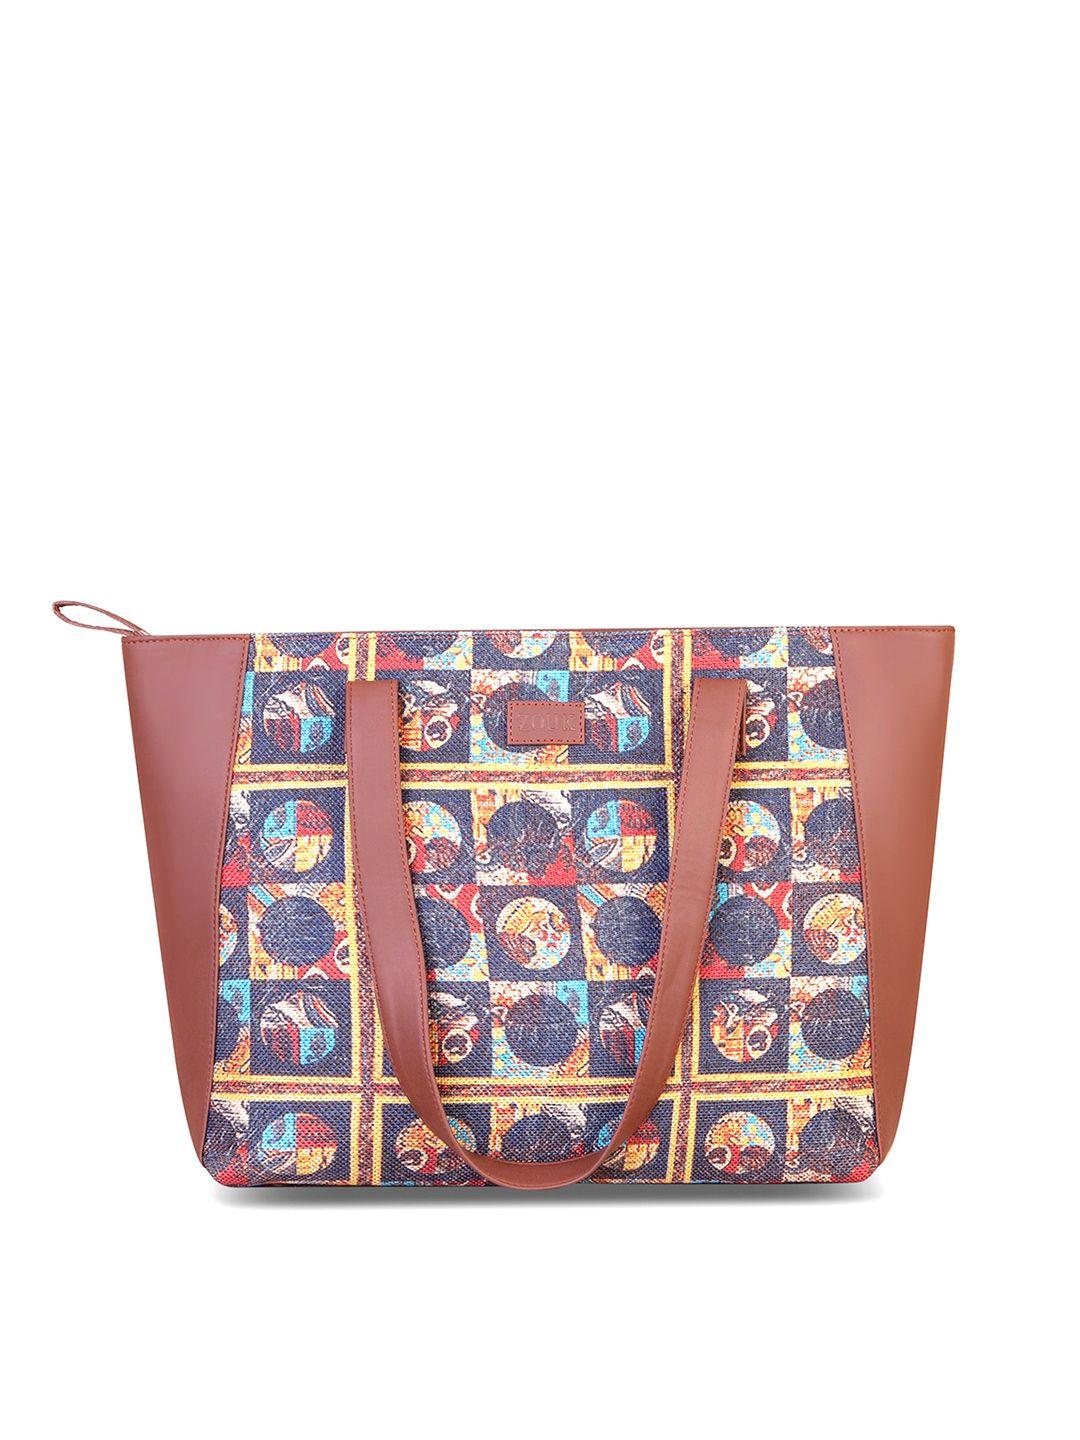 zouk-brown-printed-shopper-tote-bag